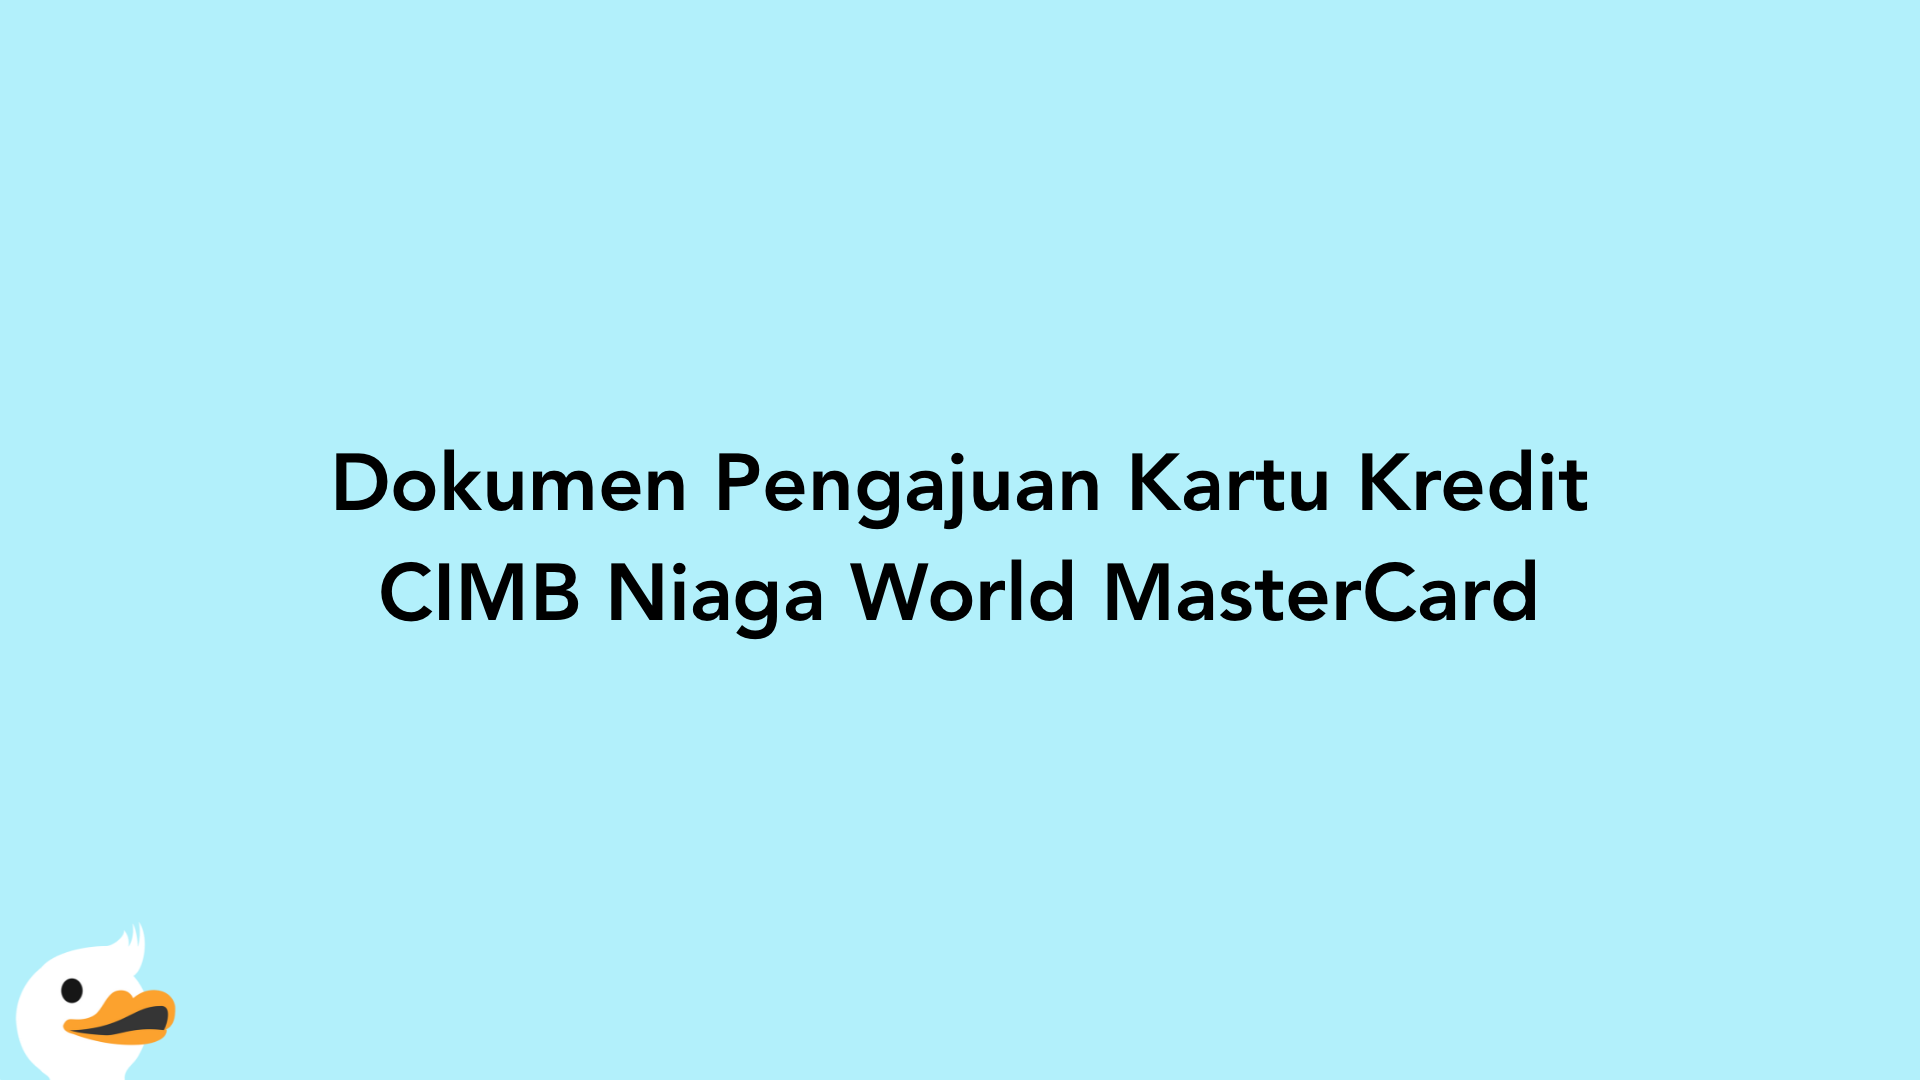 Dokumen Pengajuan Kartu Kredit CIMB Niaga World MasterCard